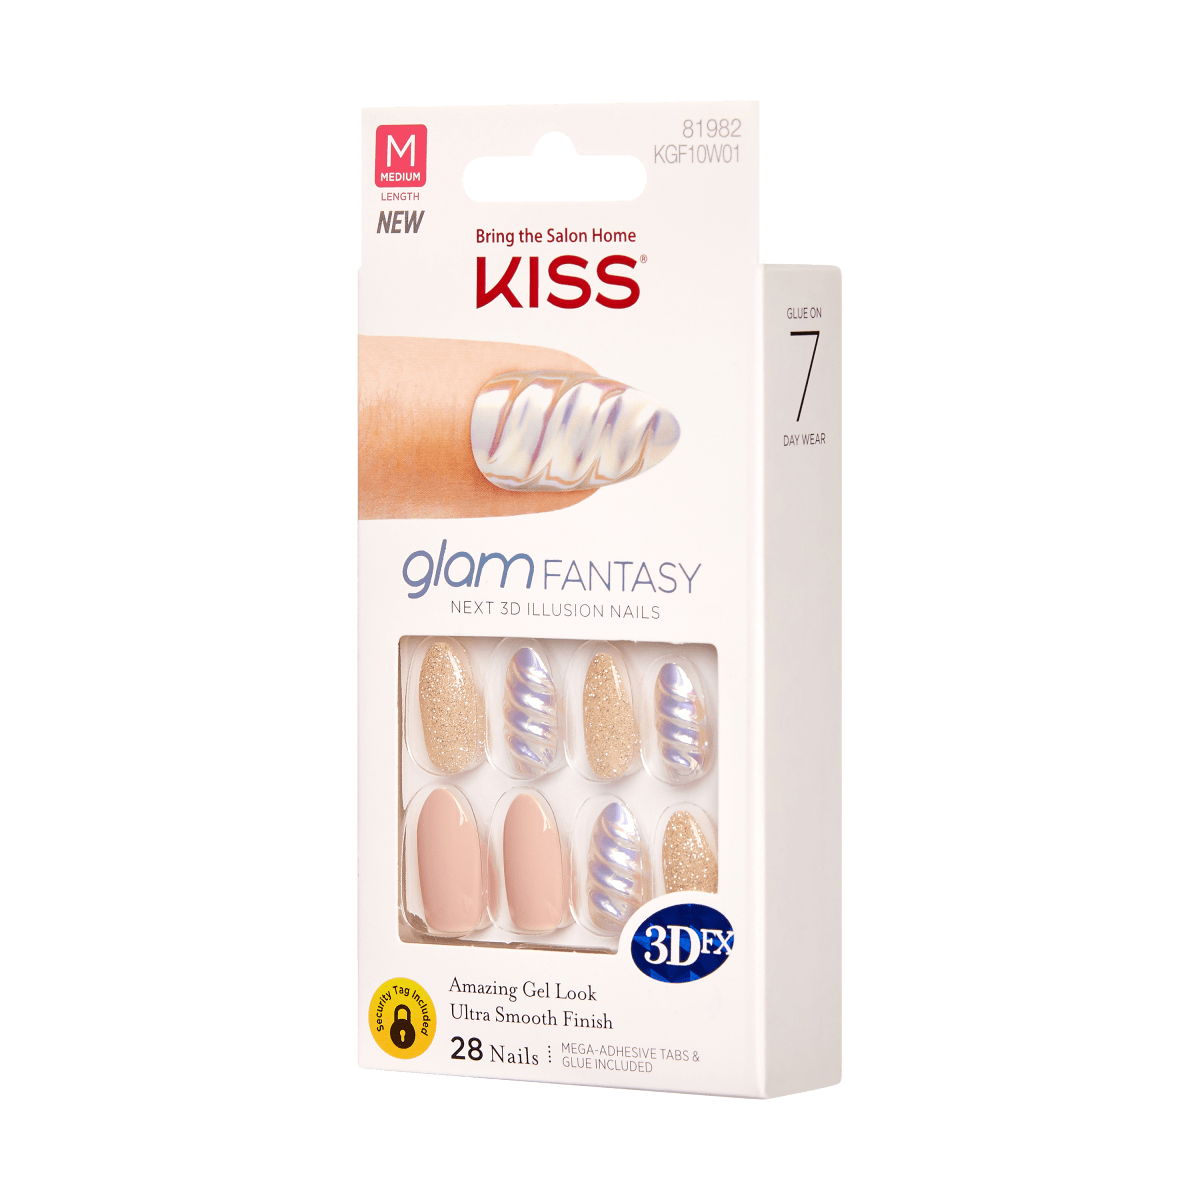 KISS Glam Fantasy Nails - Passion